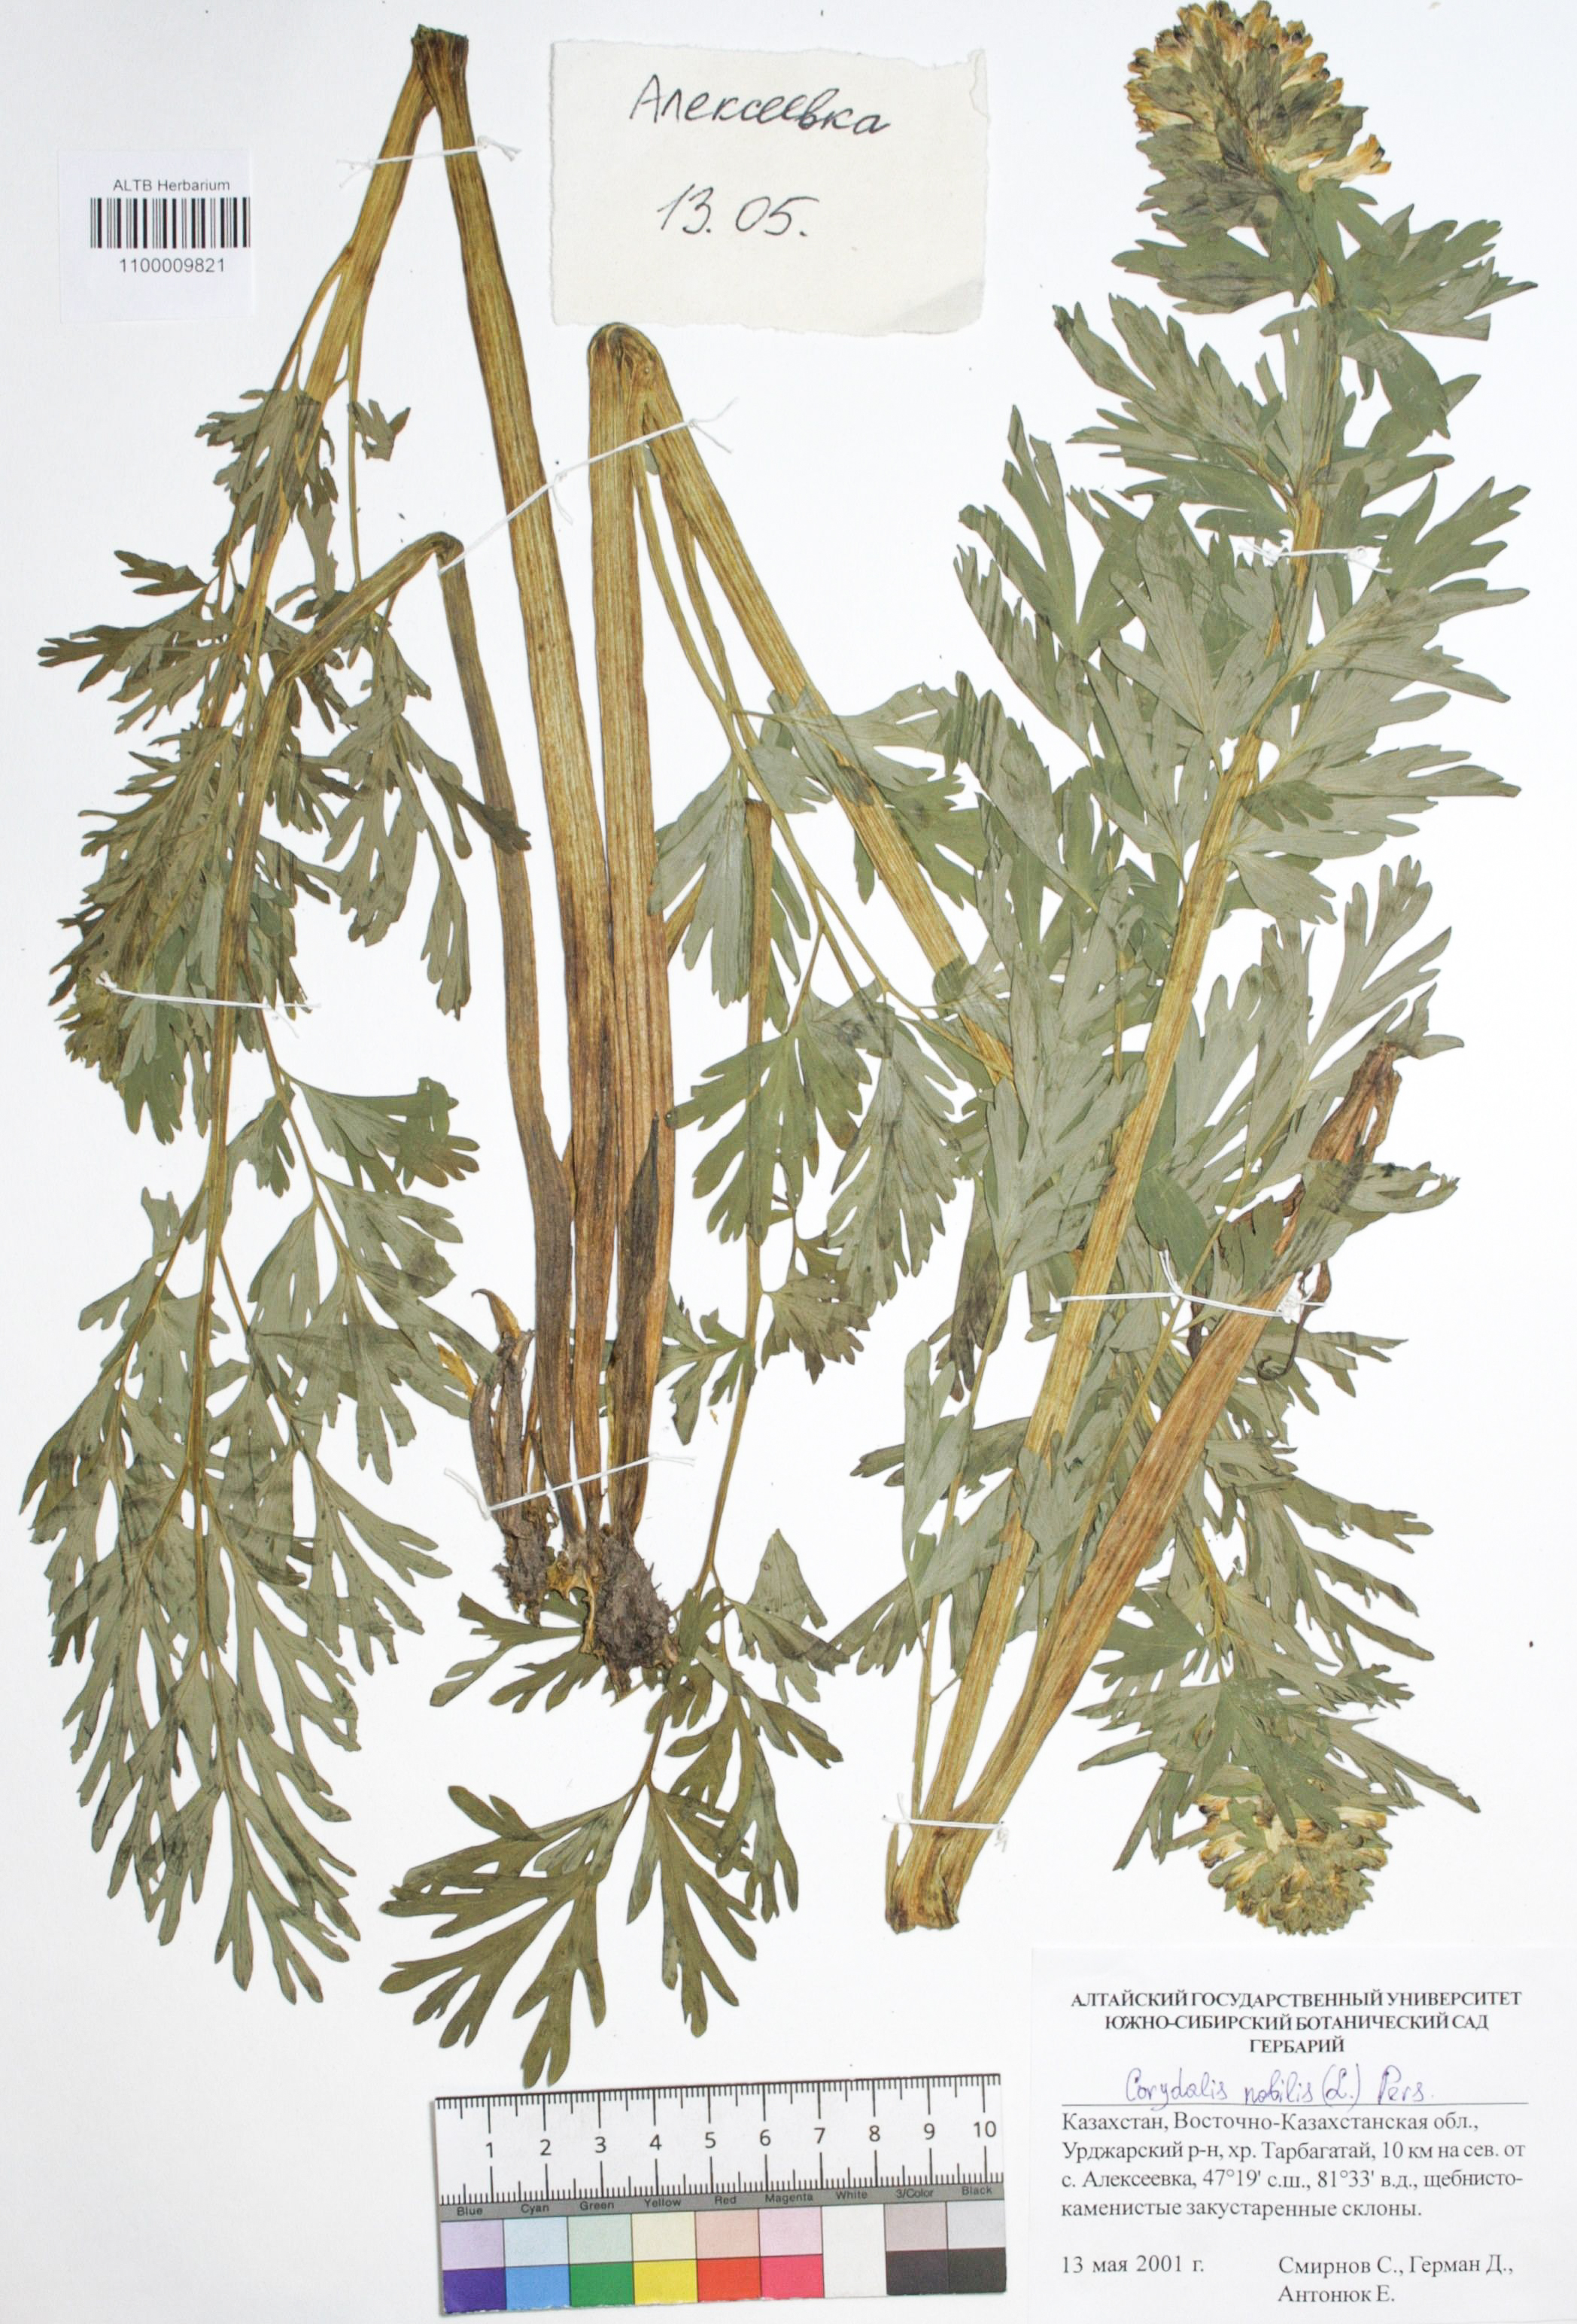 Corydalis nobilis (L.) Pers.